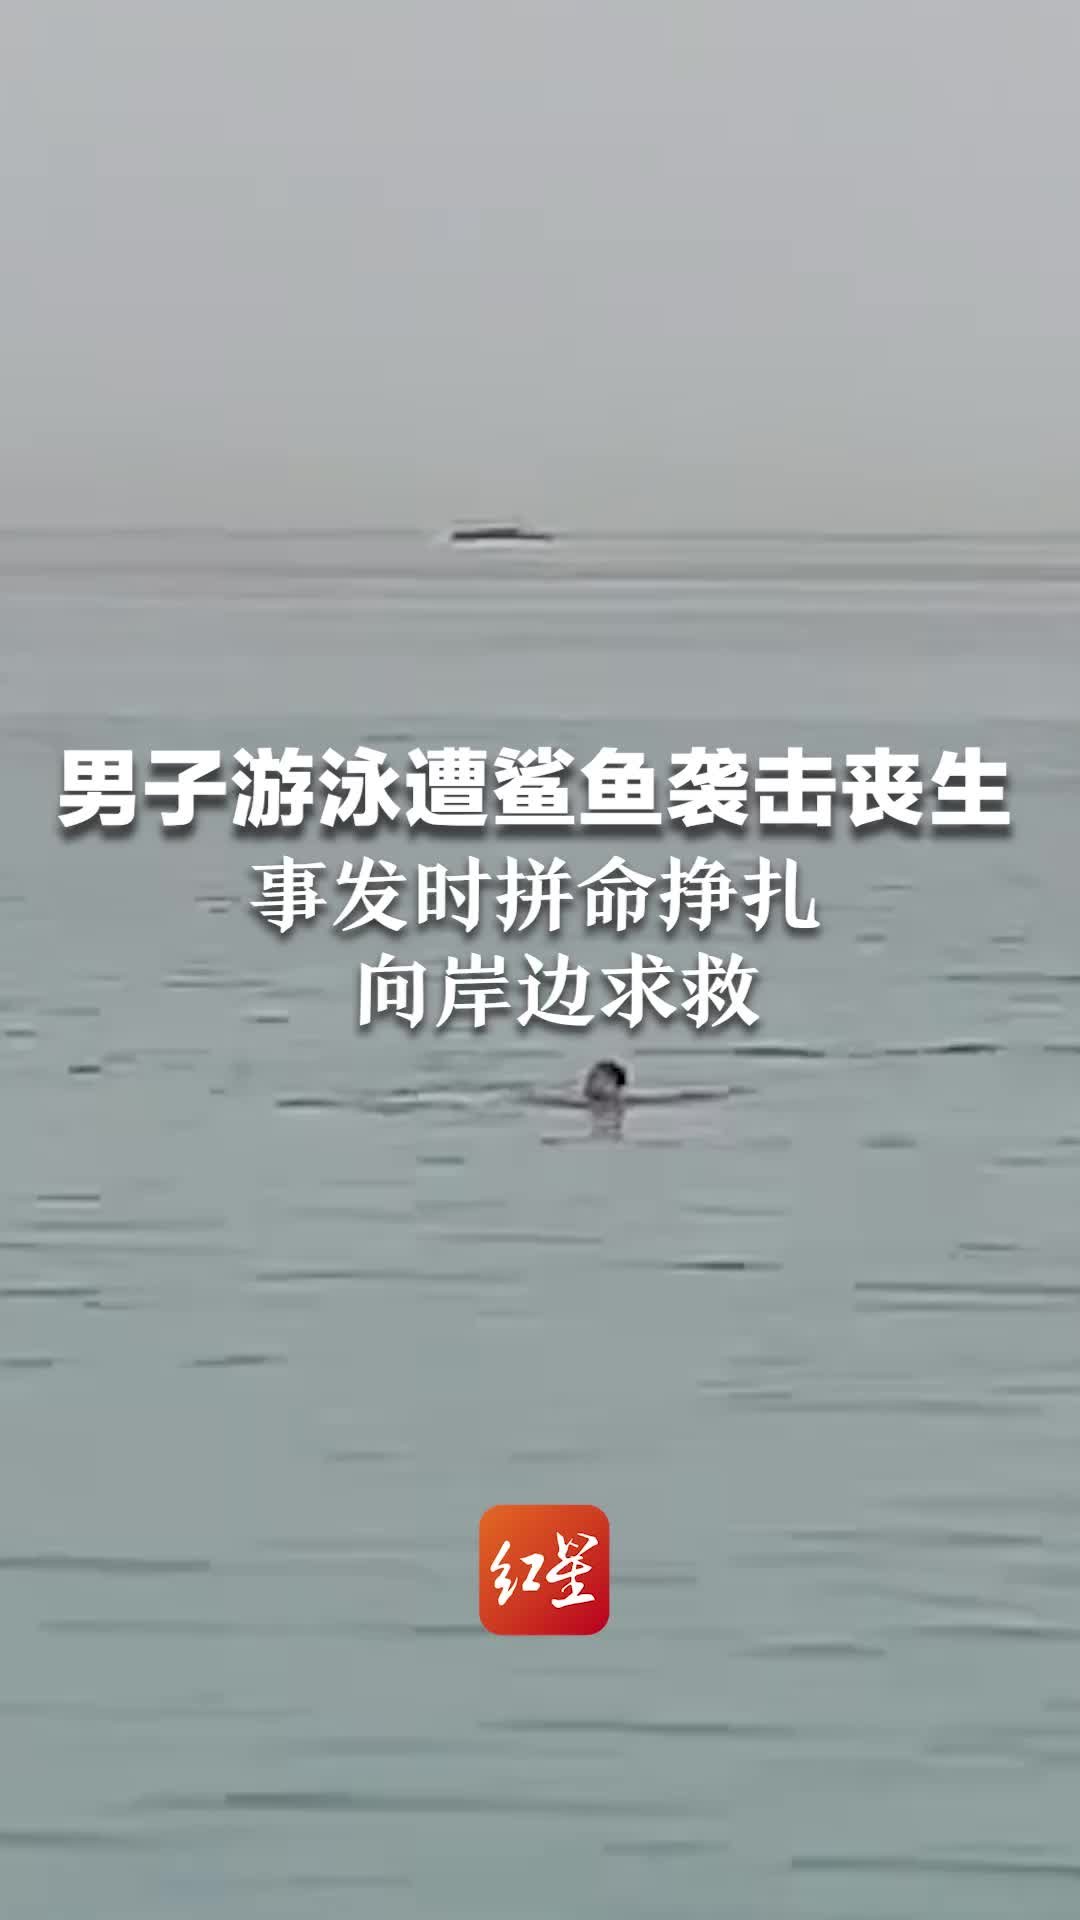 男子在埃及游泳遭鲨鱼袭击丧生 事发时拼命挣扎向岸边求救